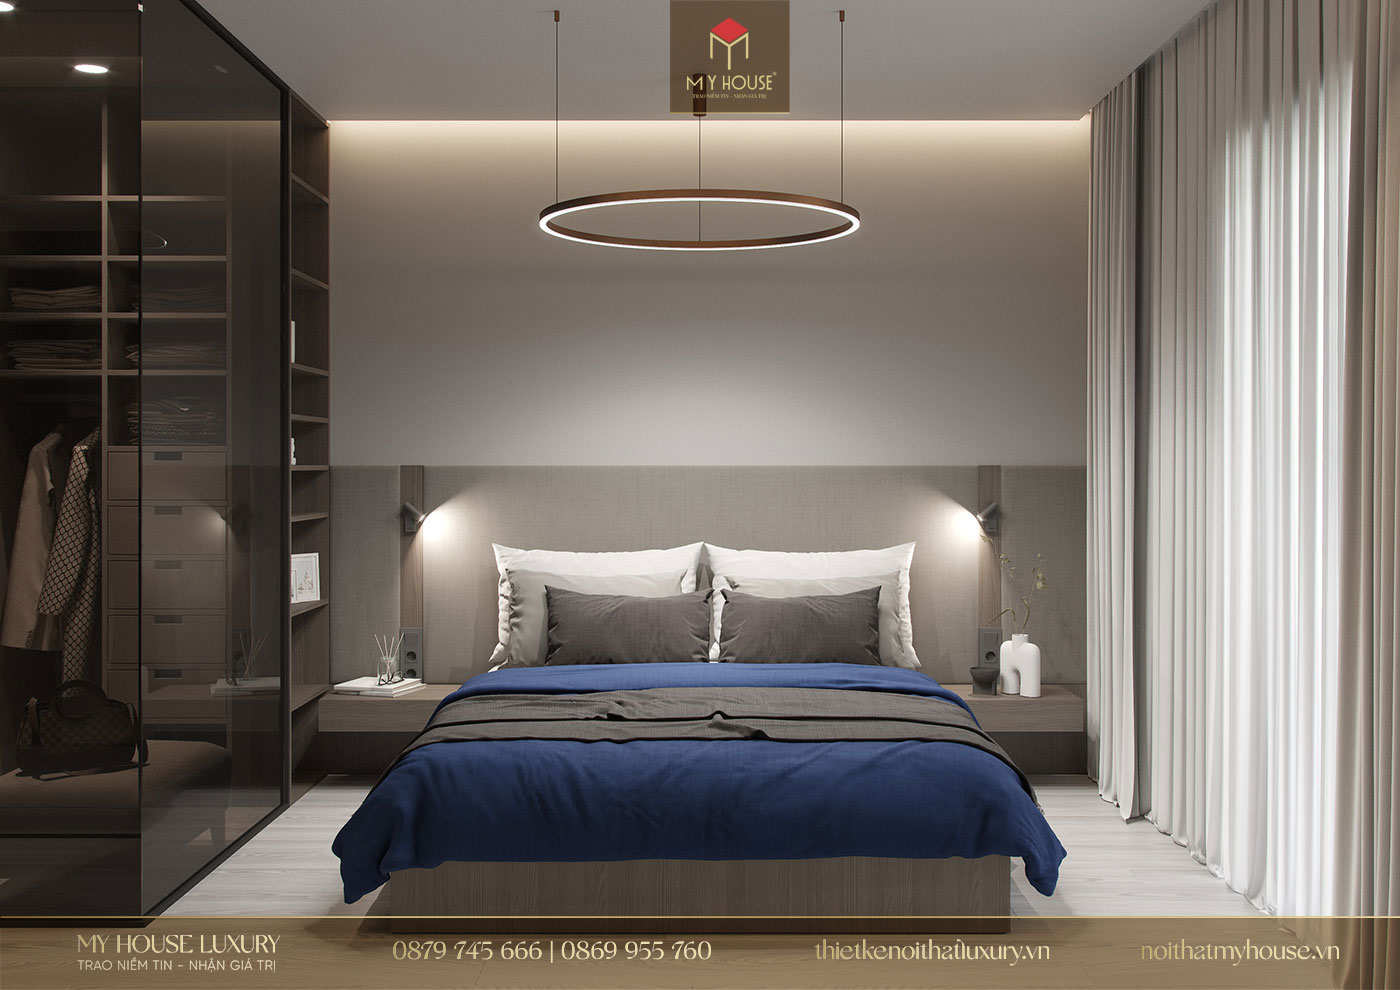 Phòng ngủ sử dụng những tone màu trung tính, mang đến vẻ đẹp thanh lịch tinh tế